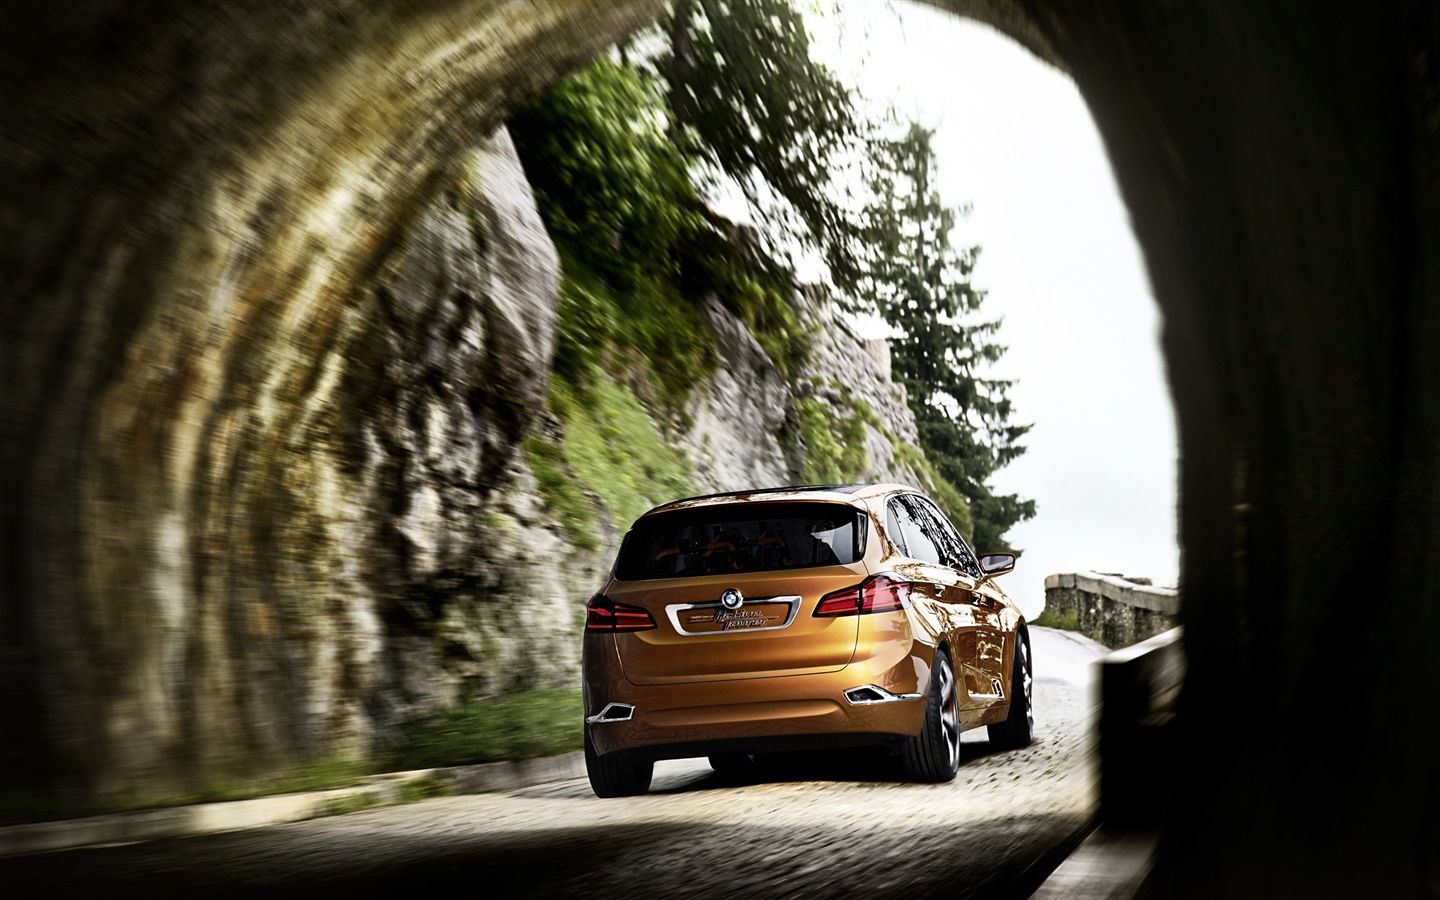 2013 BMW Concept Aktive Tourer HD Wallpaper #11 - 1440x900